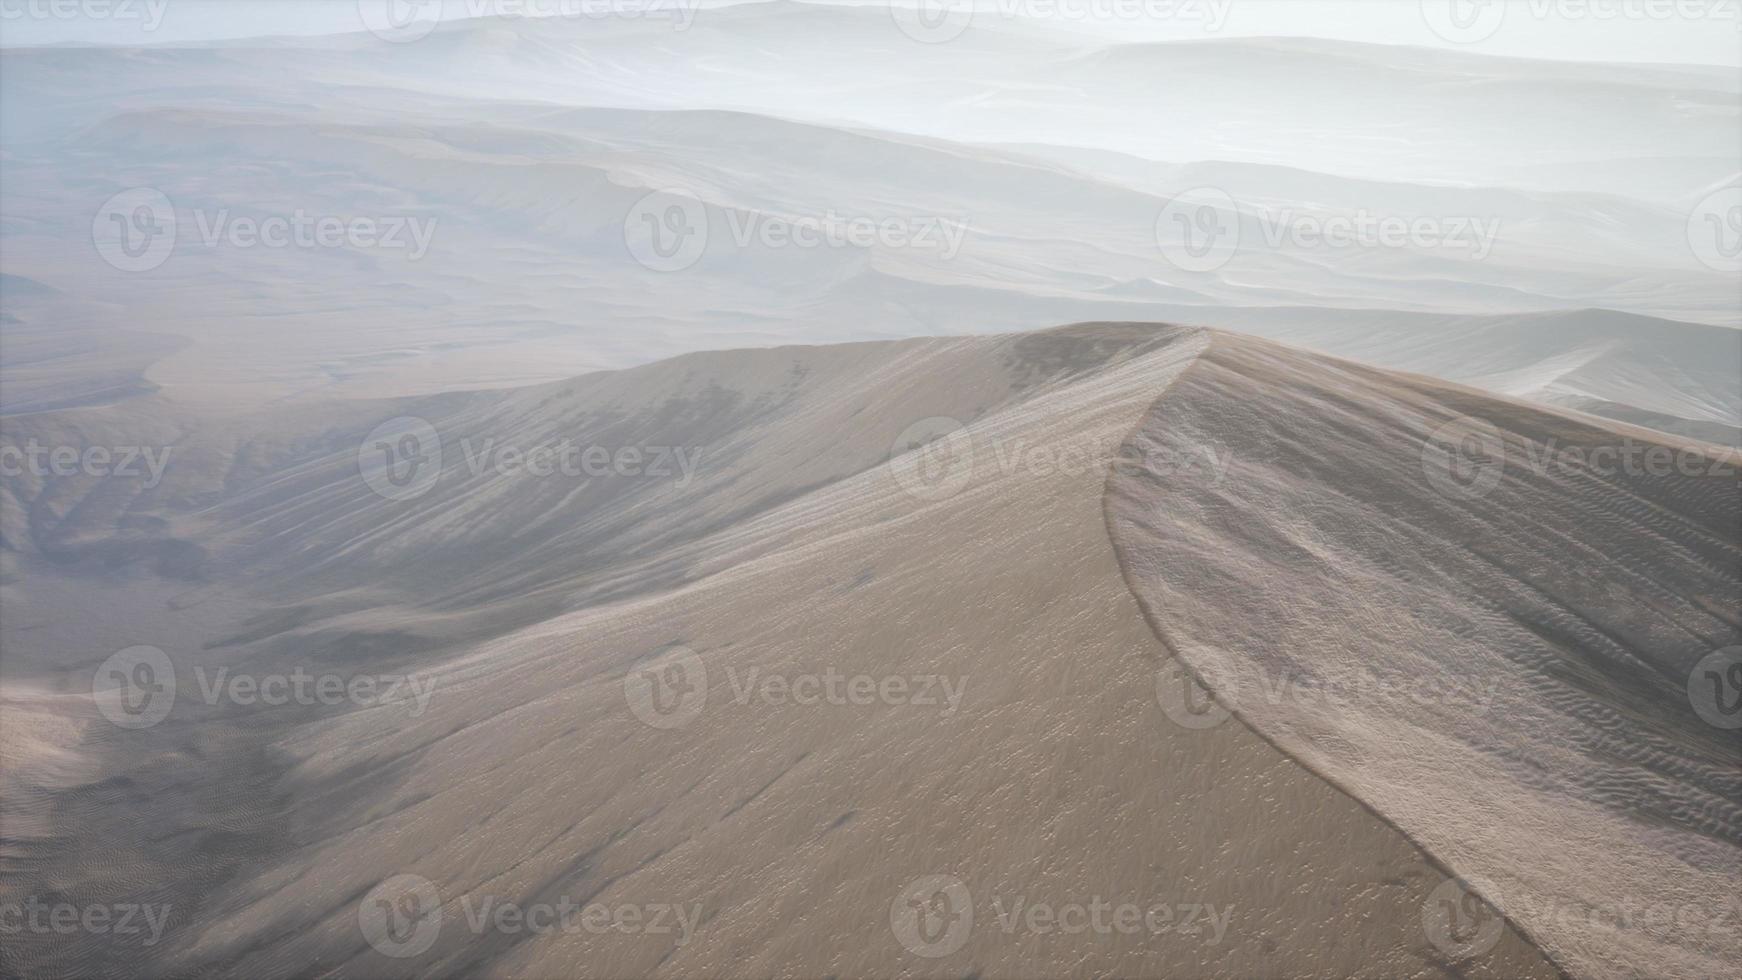 dunas do deserto de areia vermelha ao pôr do sol foto